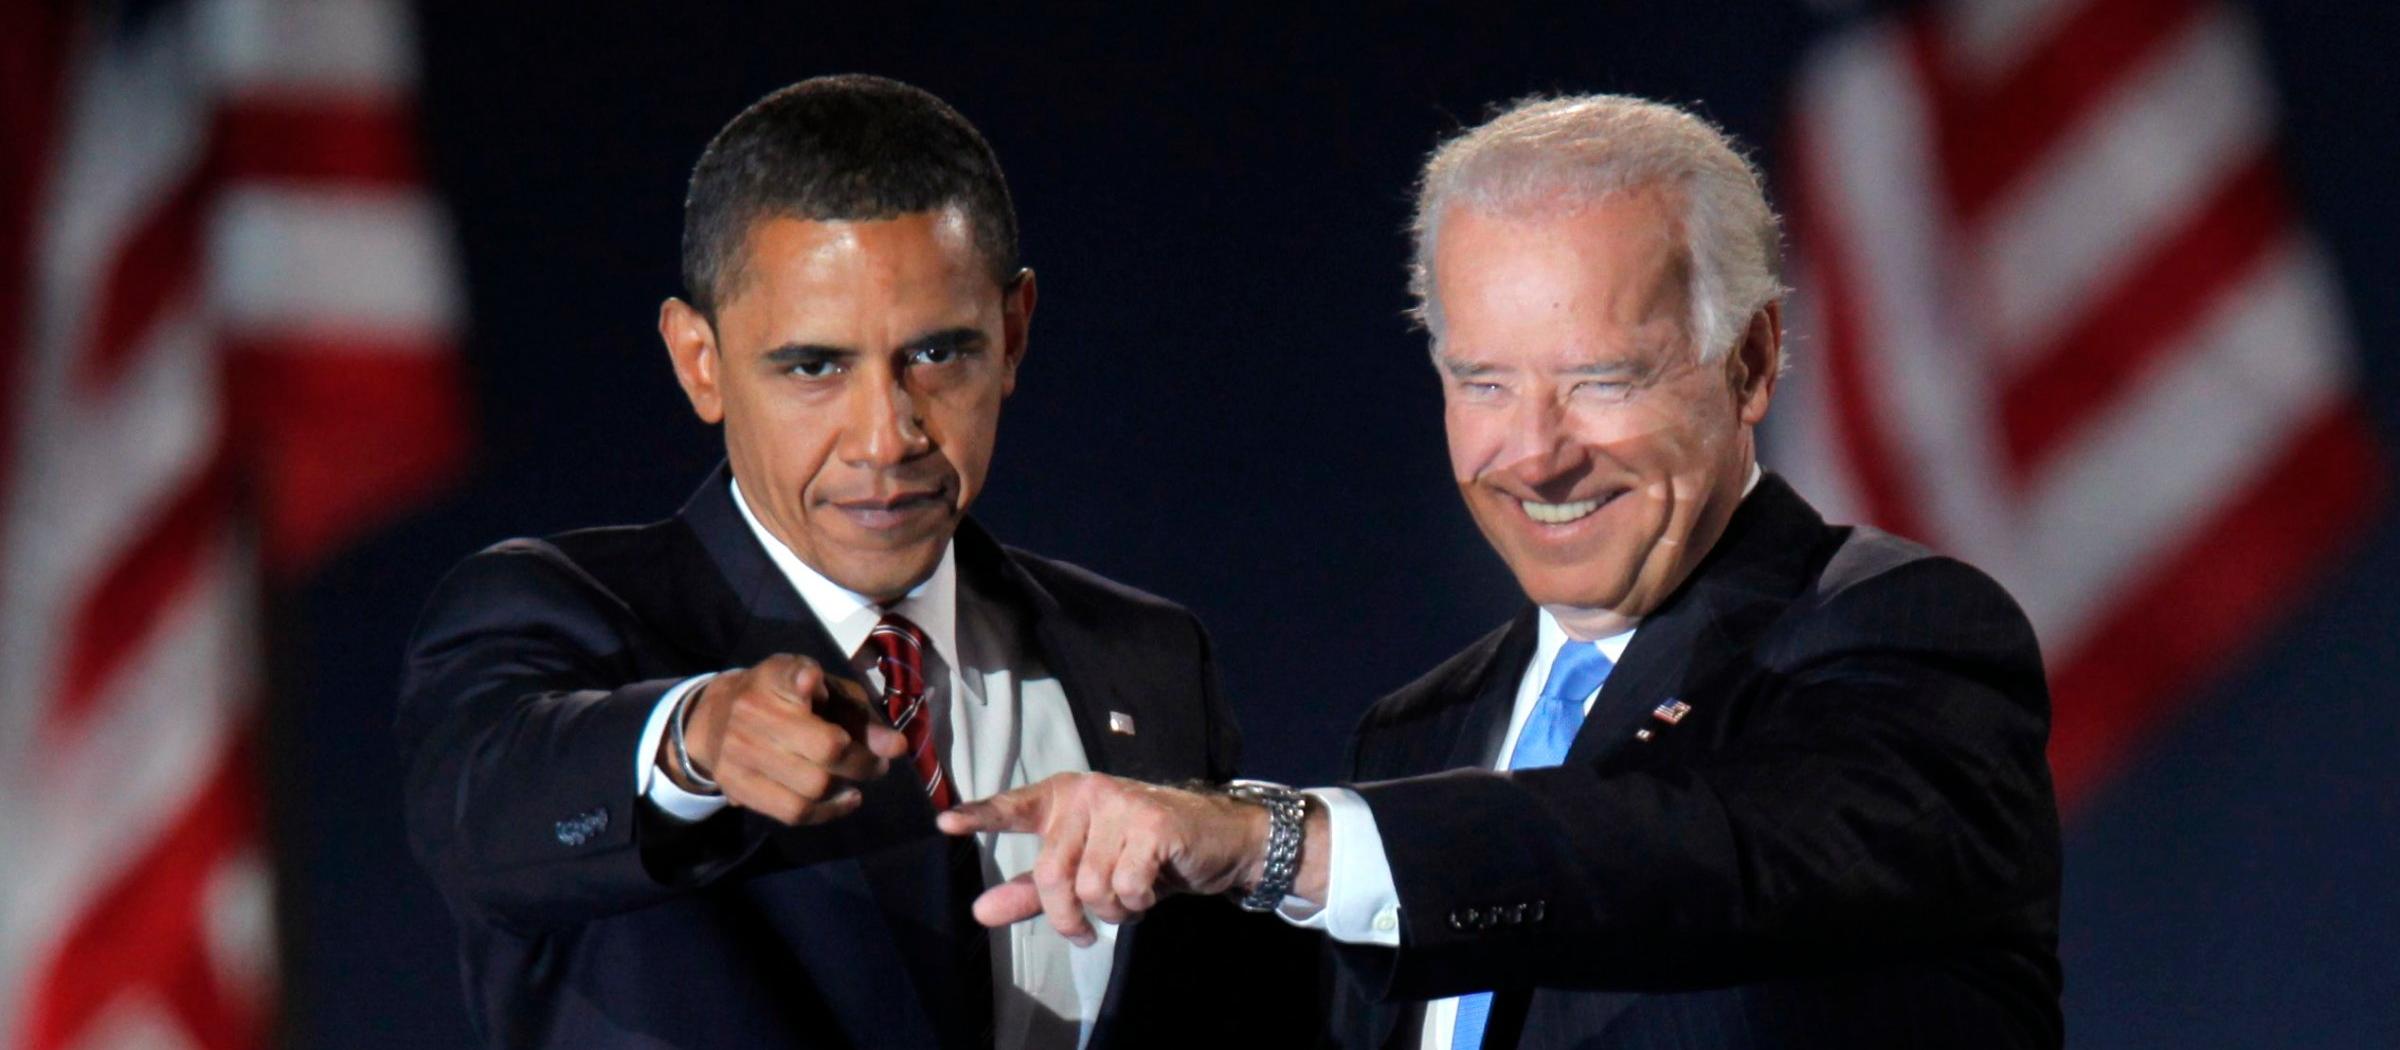 Biden and Hussein